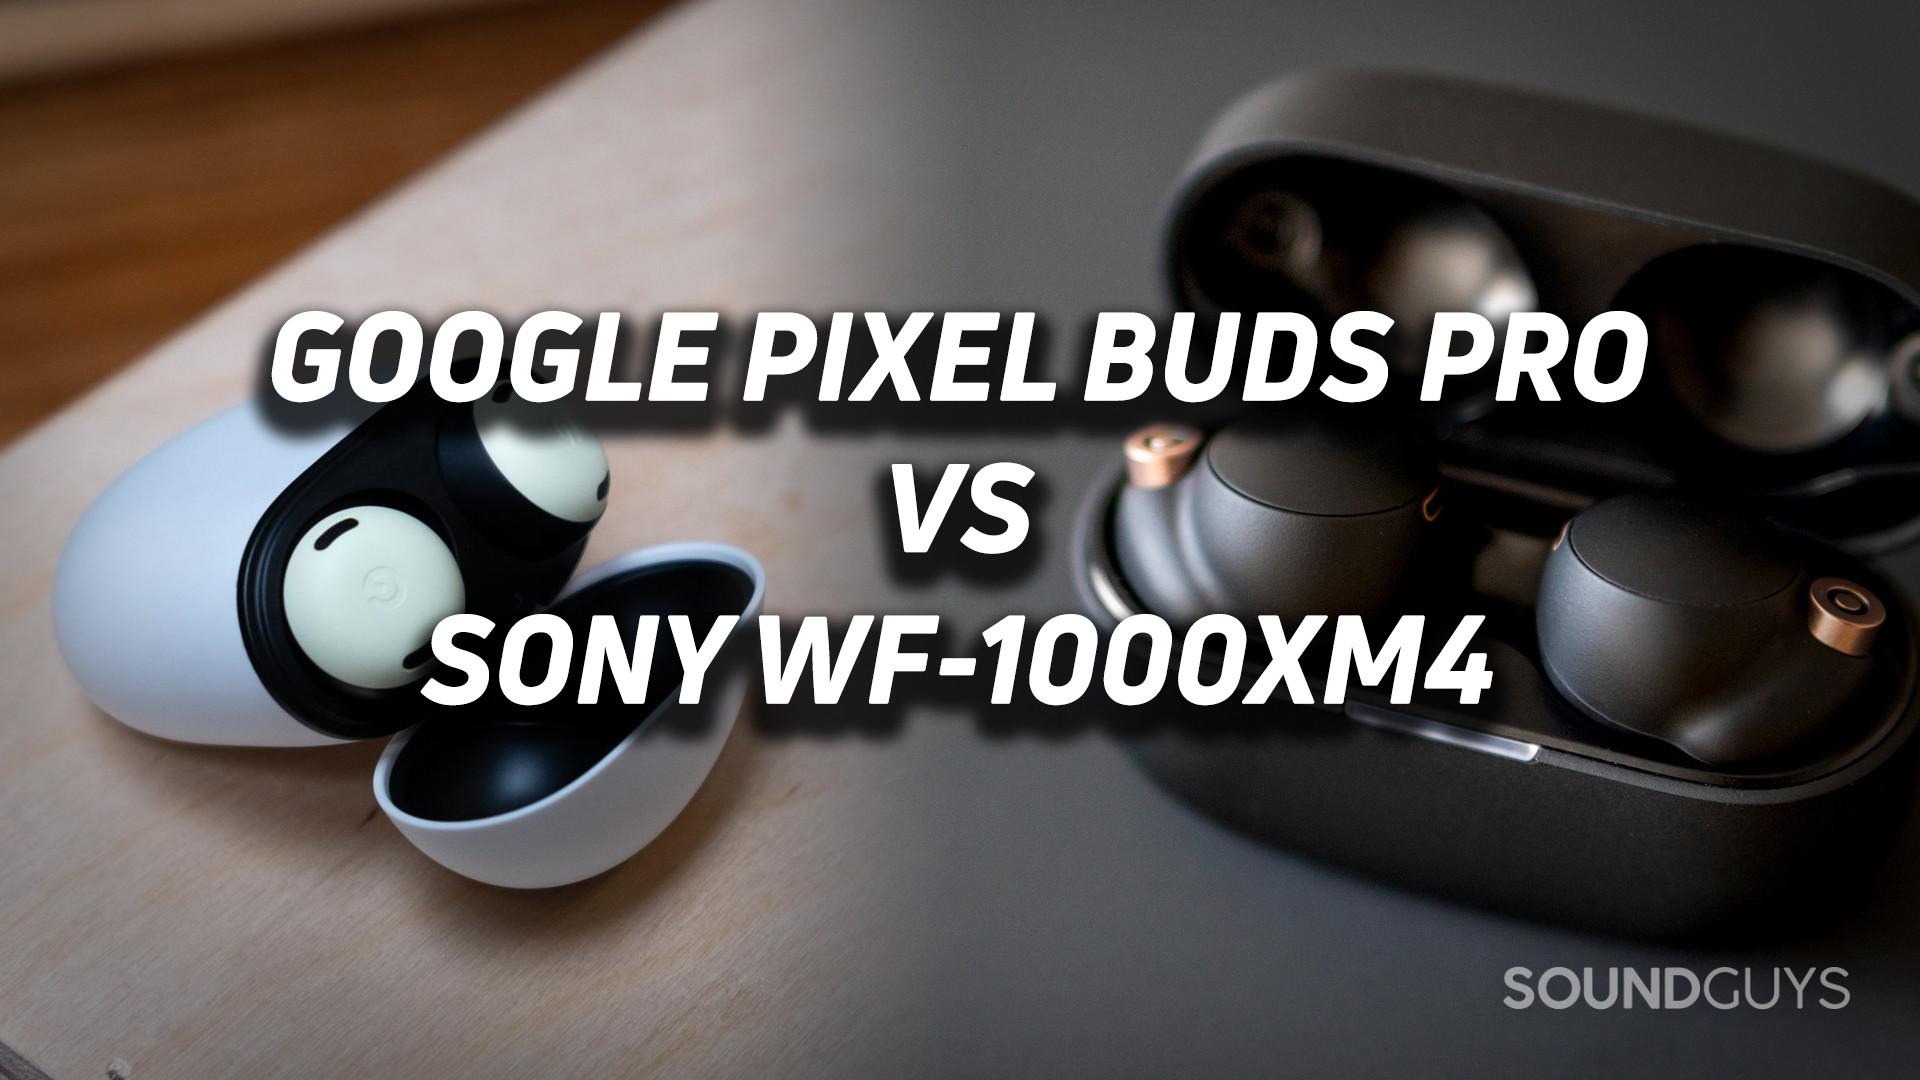 Google Pixel Buds Pro vs Sony WF-1000XM4